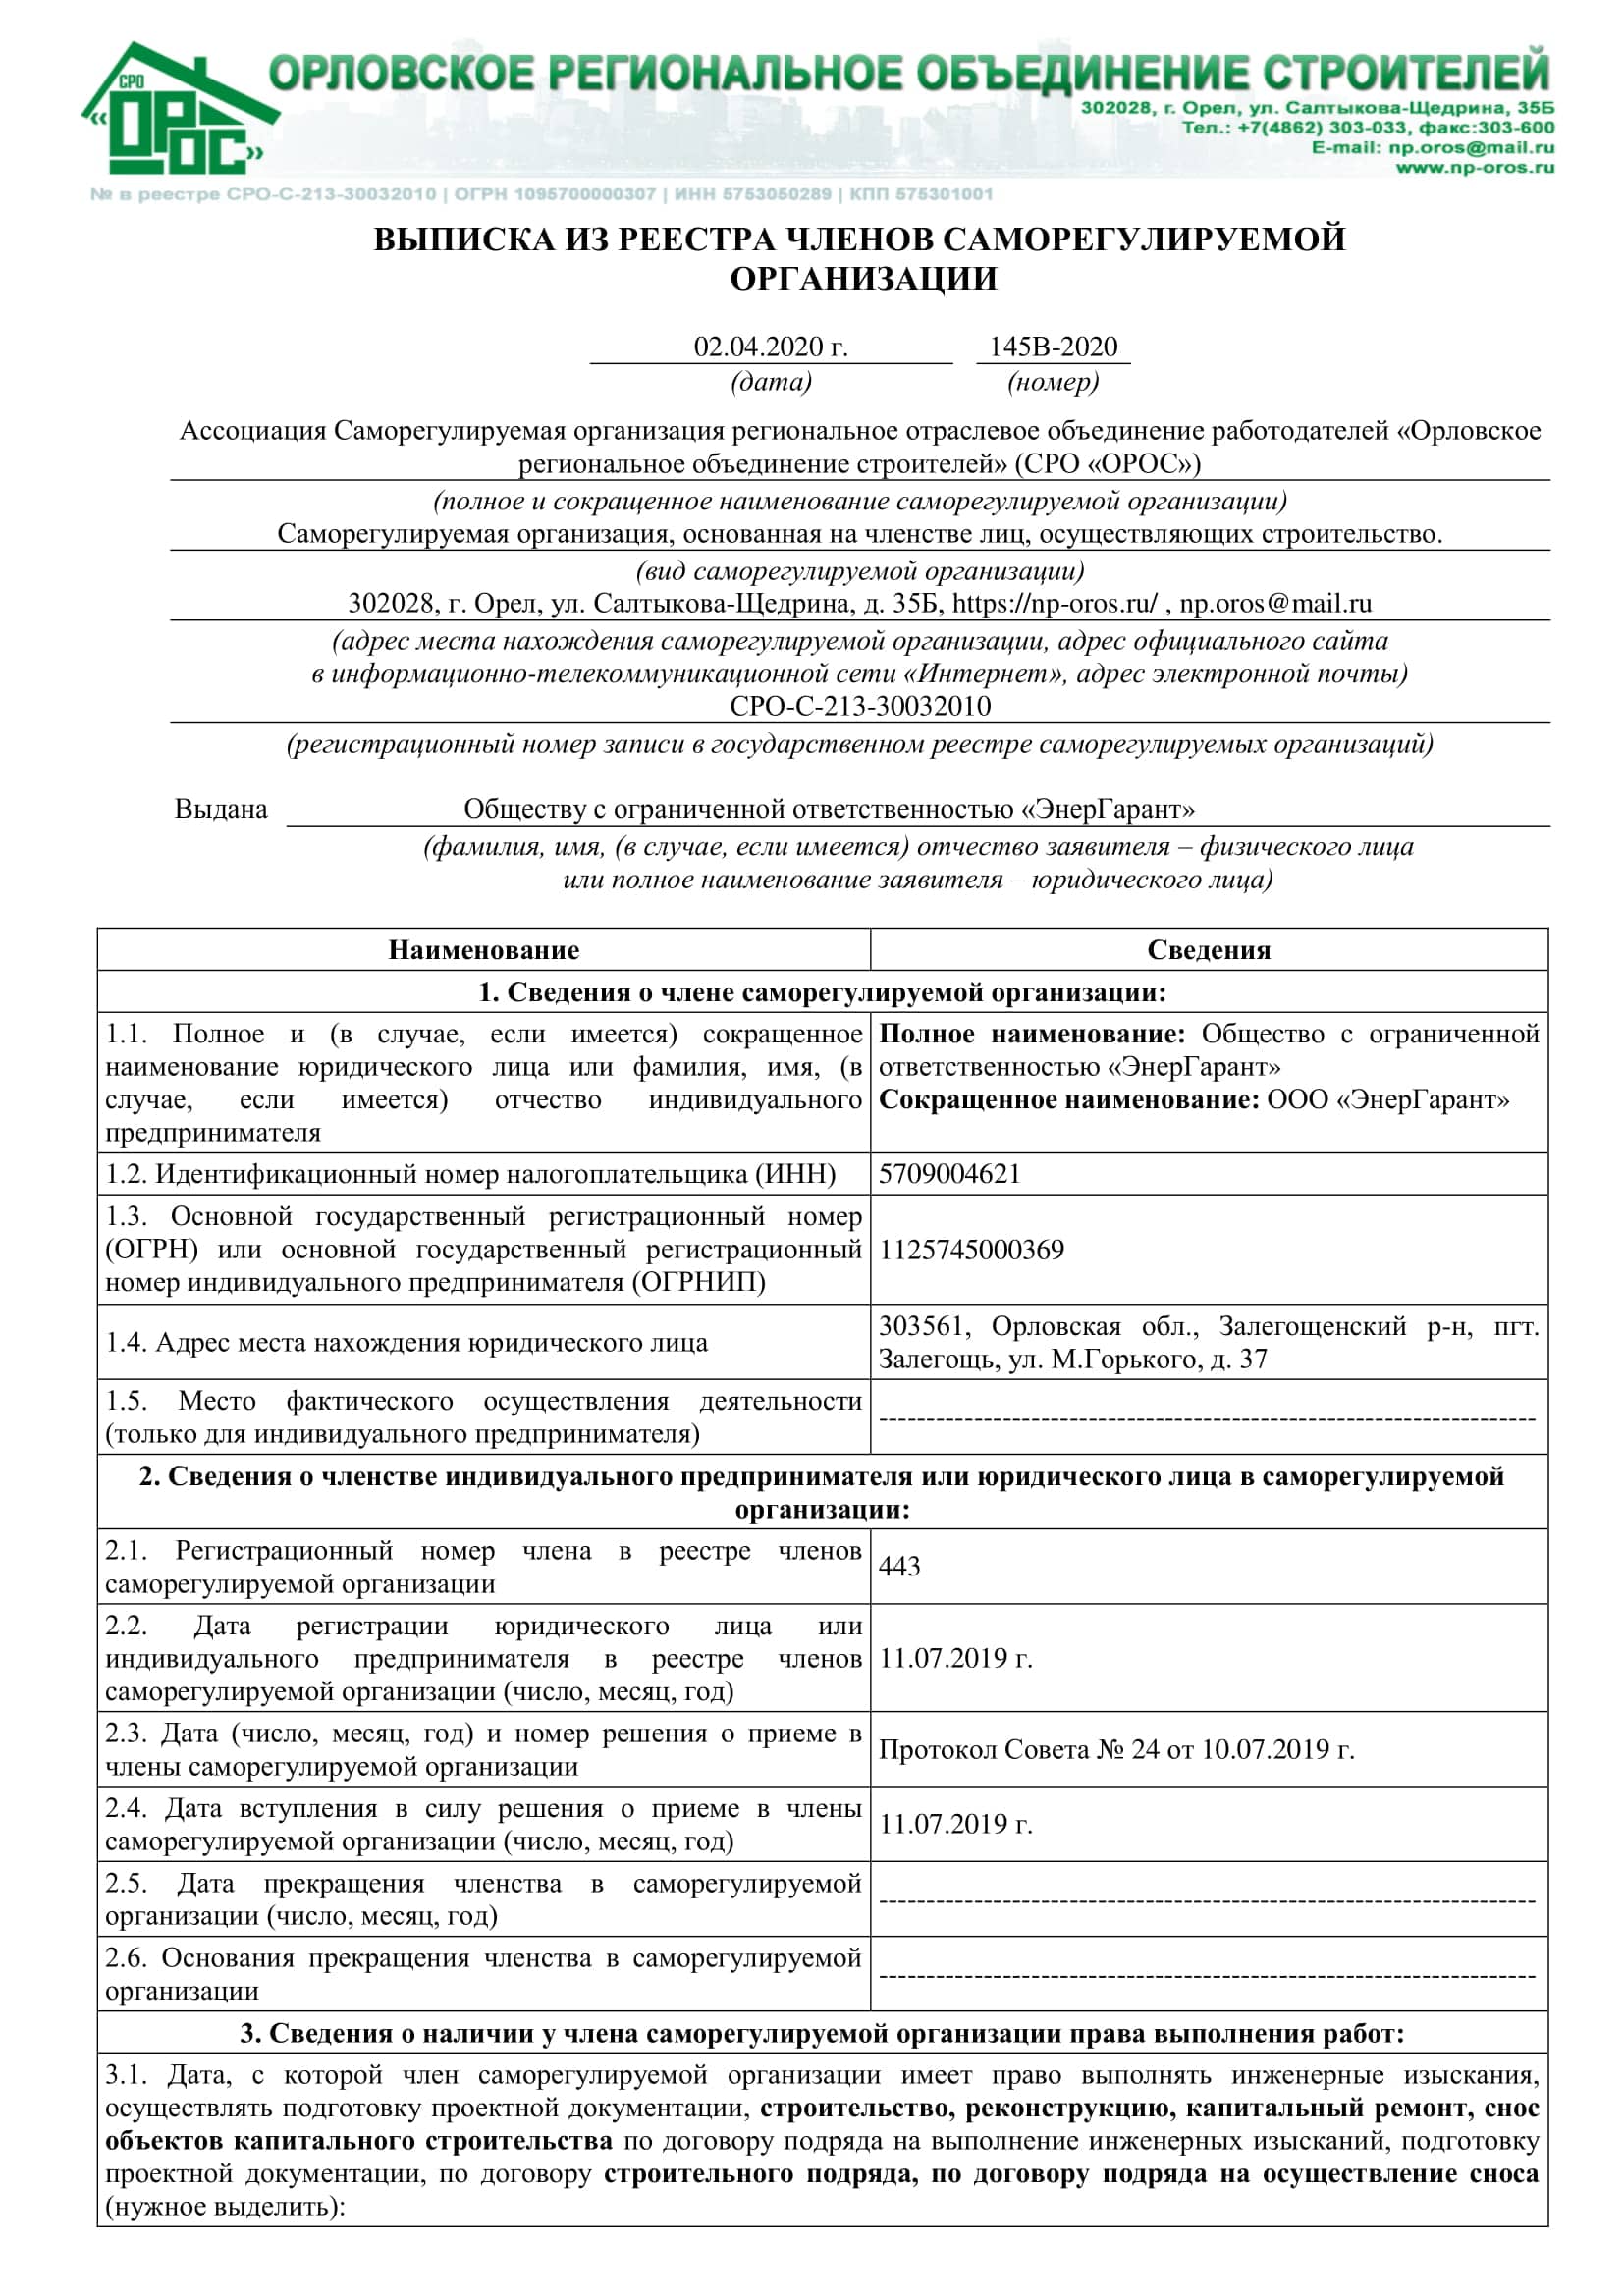 Выписка из СРО ОРОС от 02.04.2020 г.